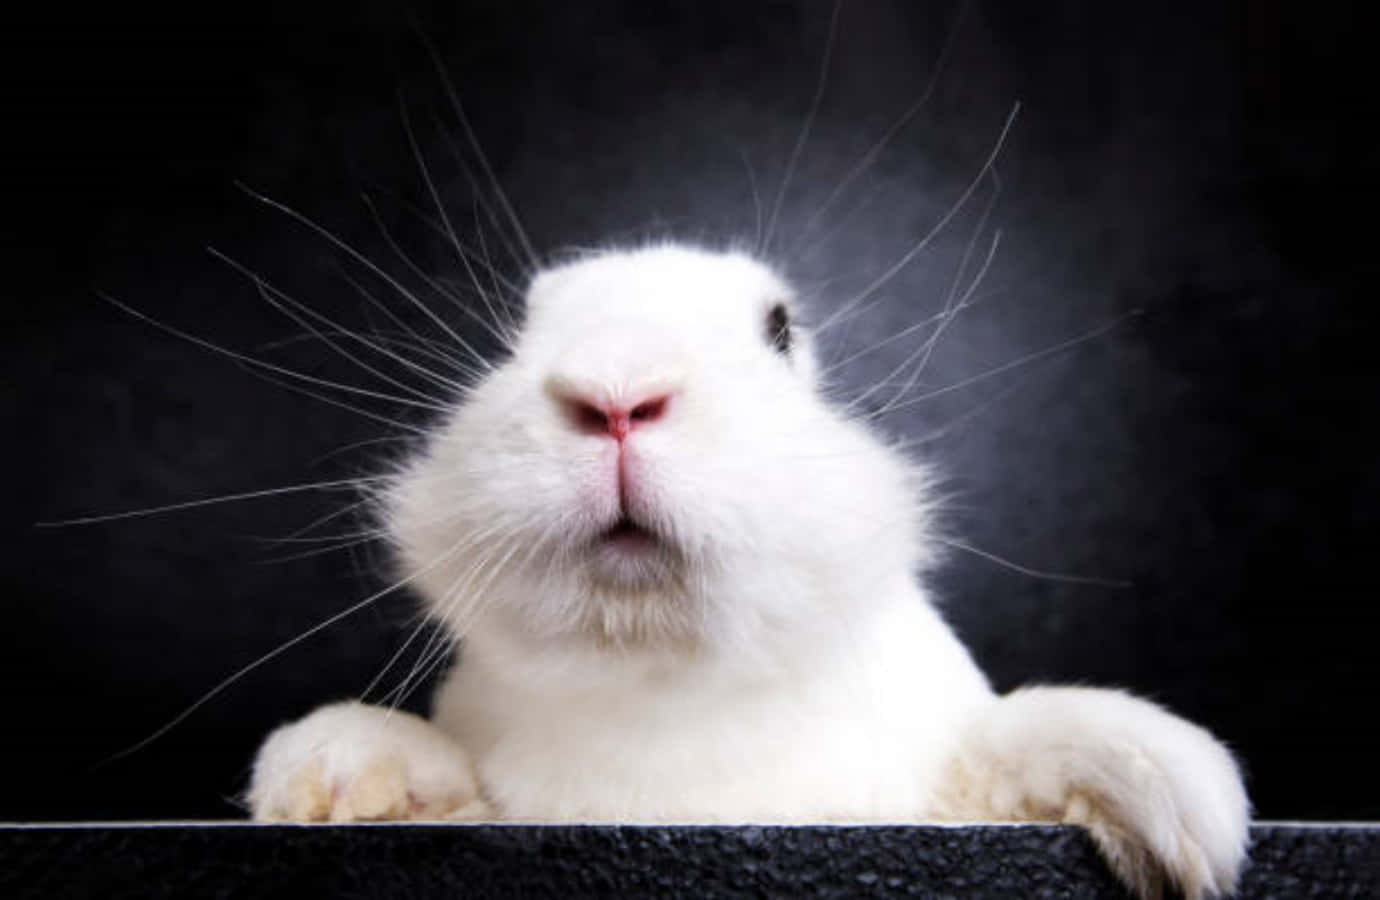 Sjov nysgerrig øre-fri kanin billed